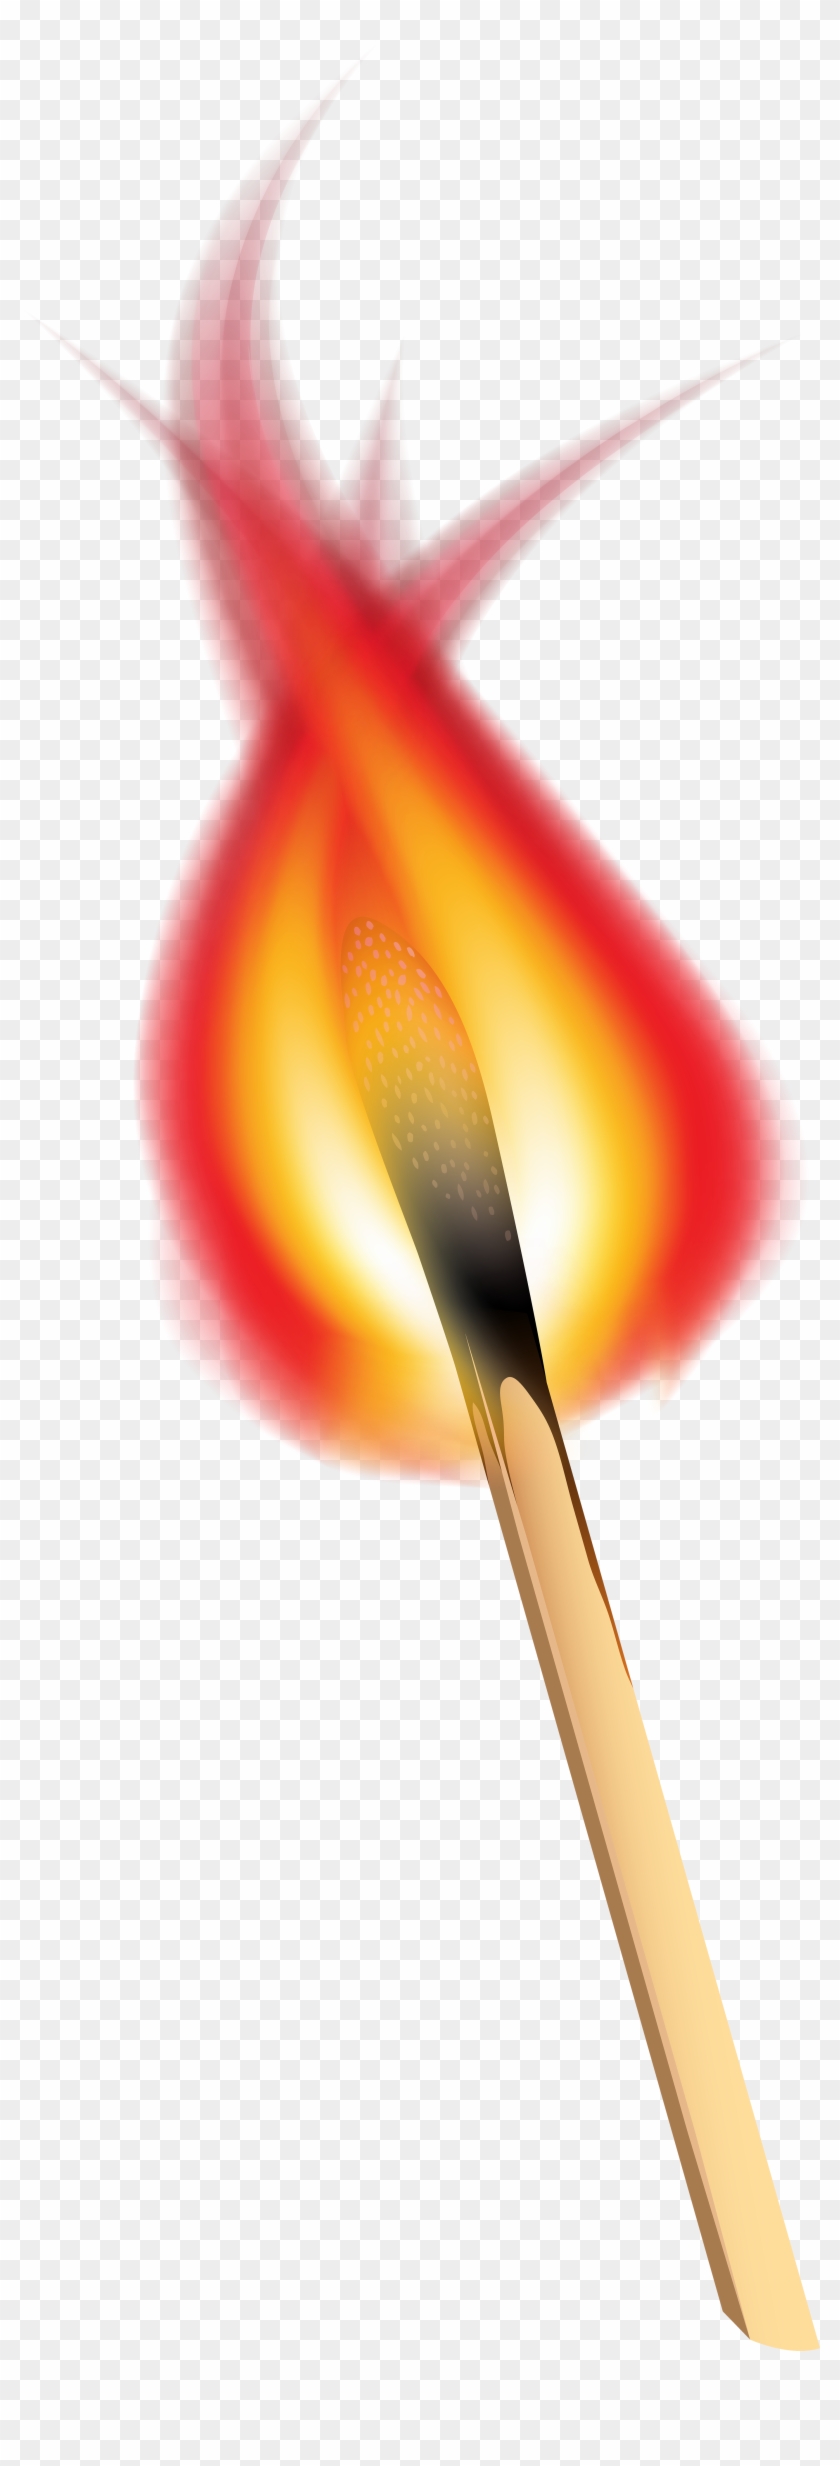 Match Clipart Burning Match - Clip Art #416329